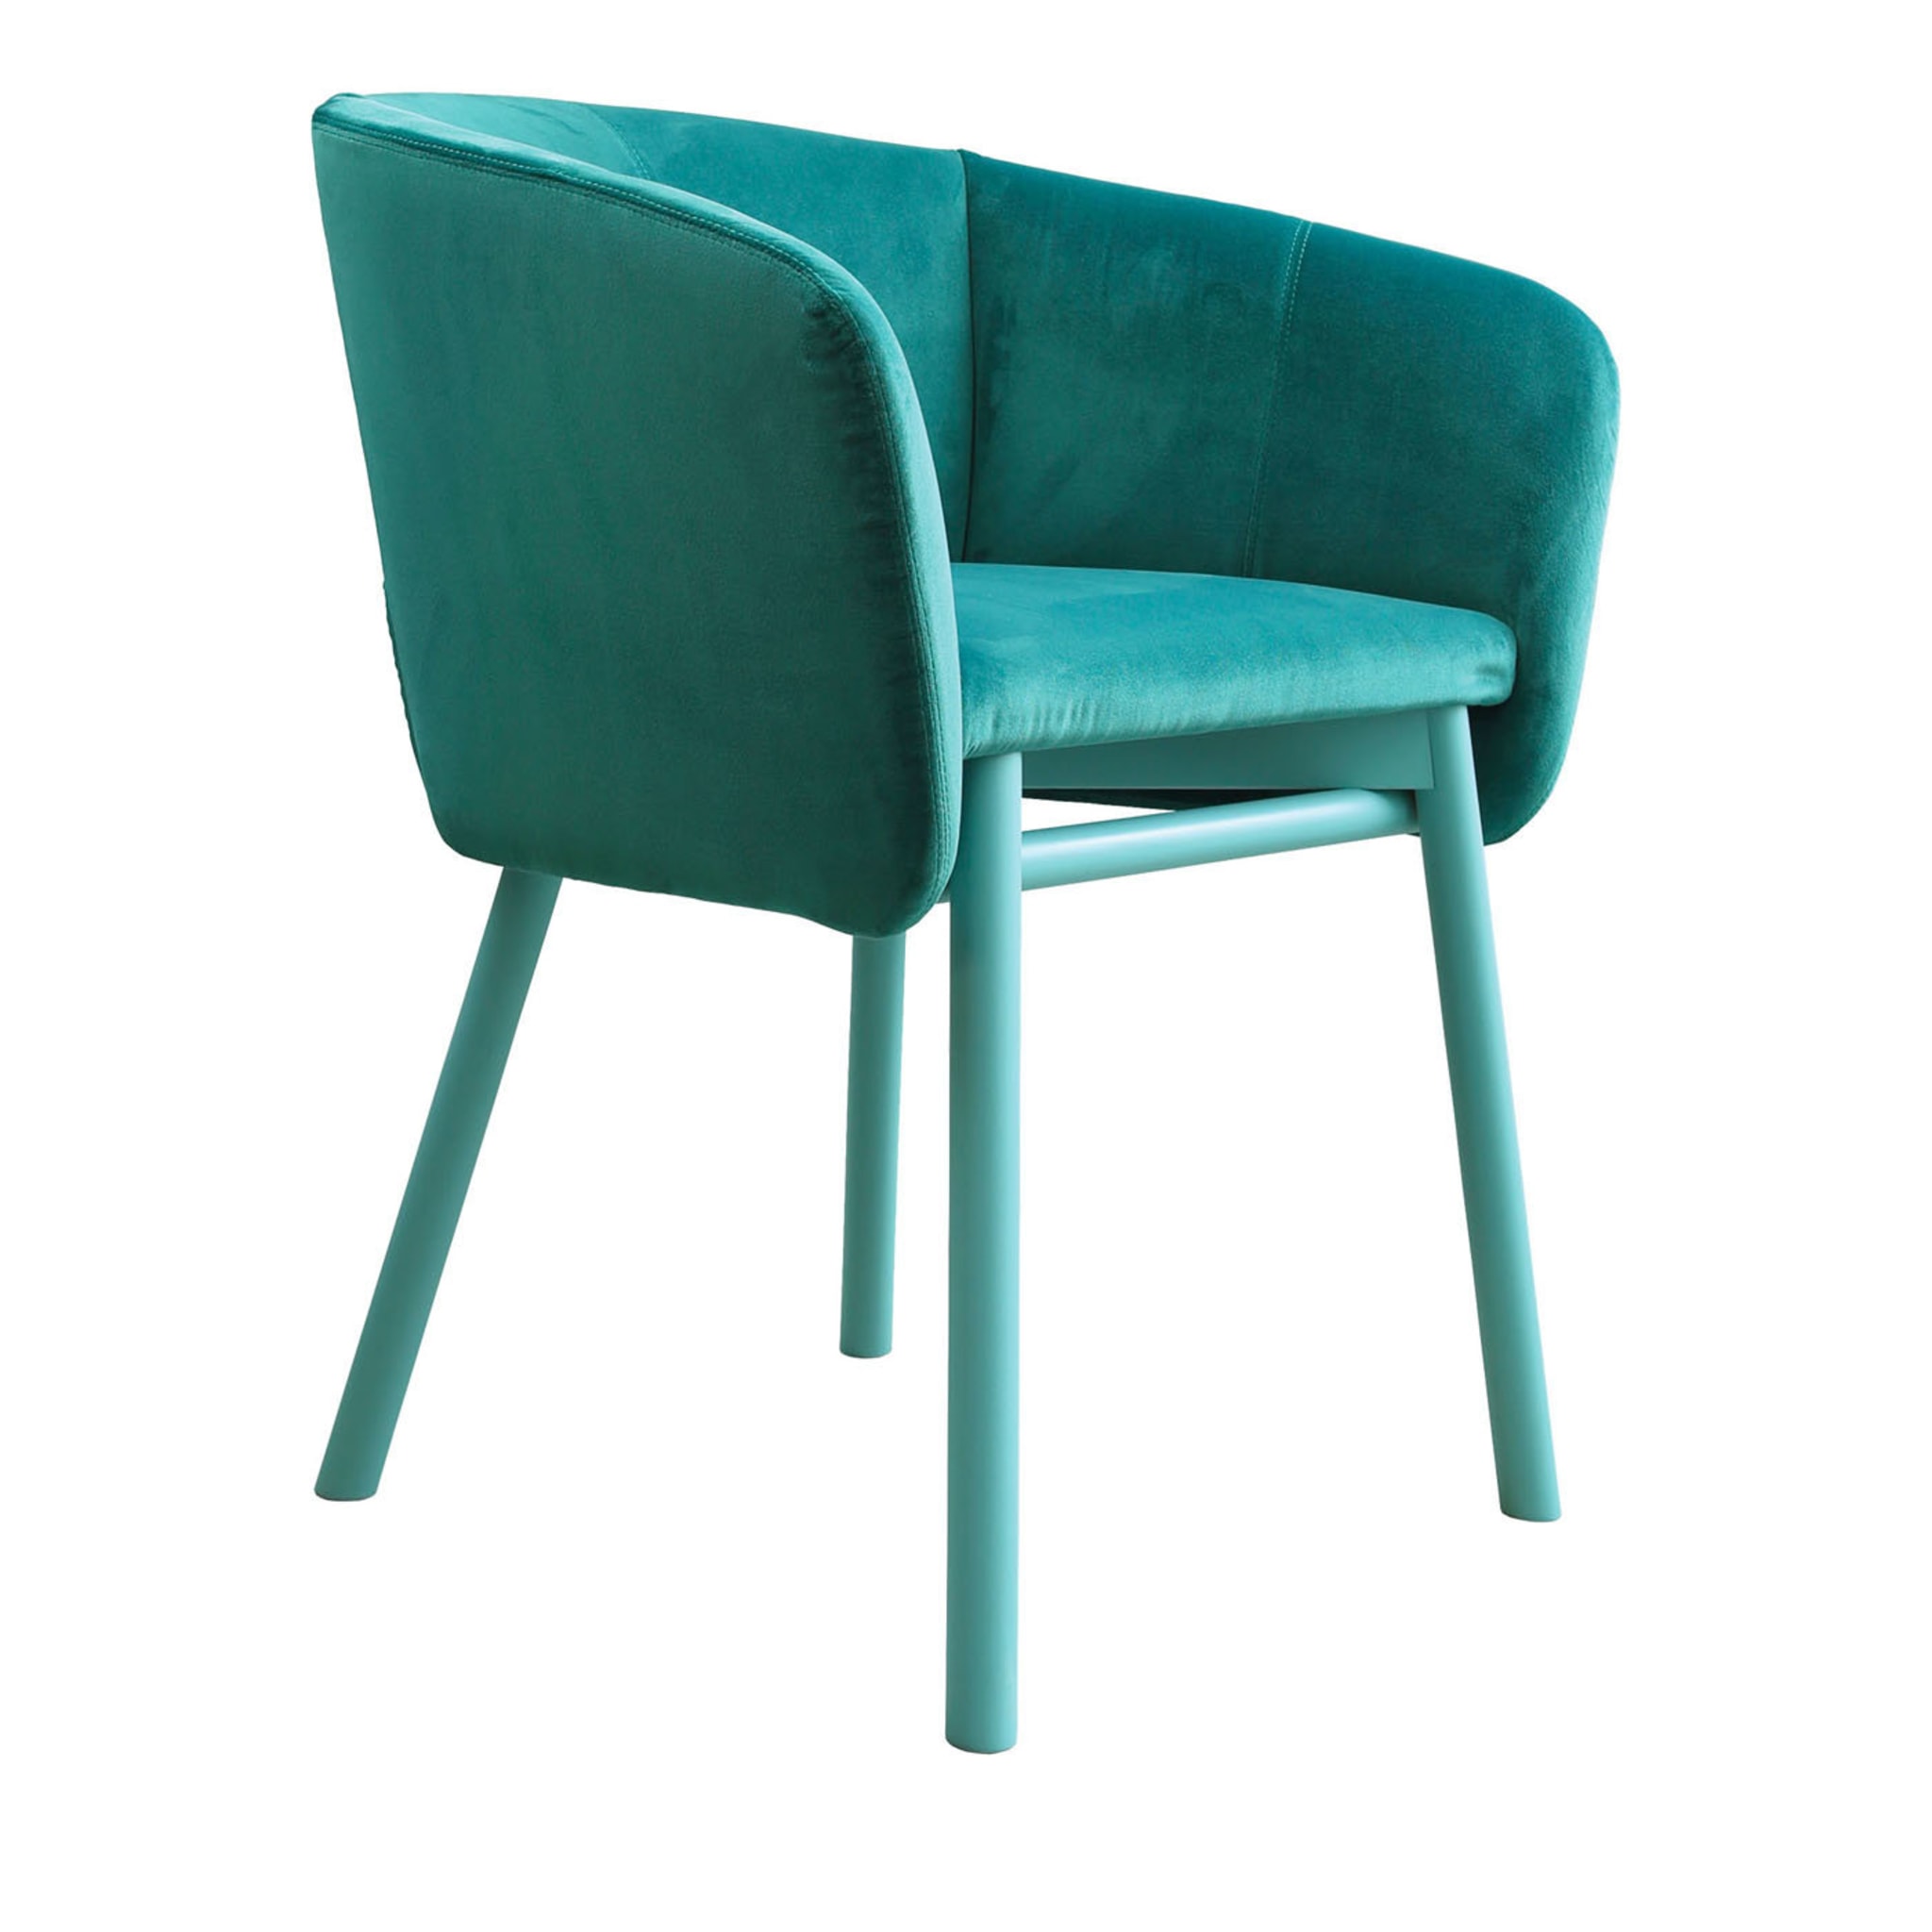 Balù Turquoise Chair by Emilio Nanni - Main view